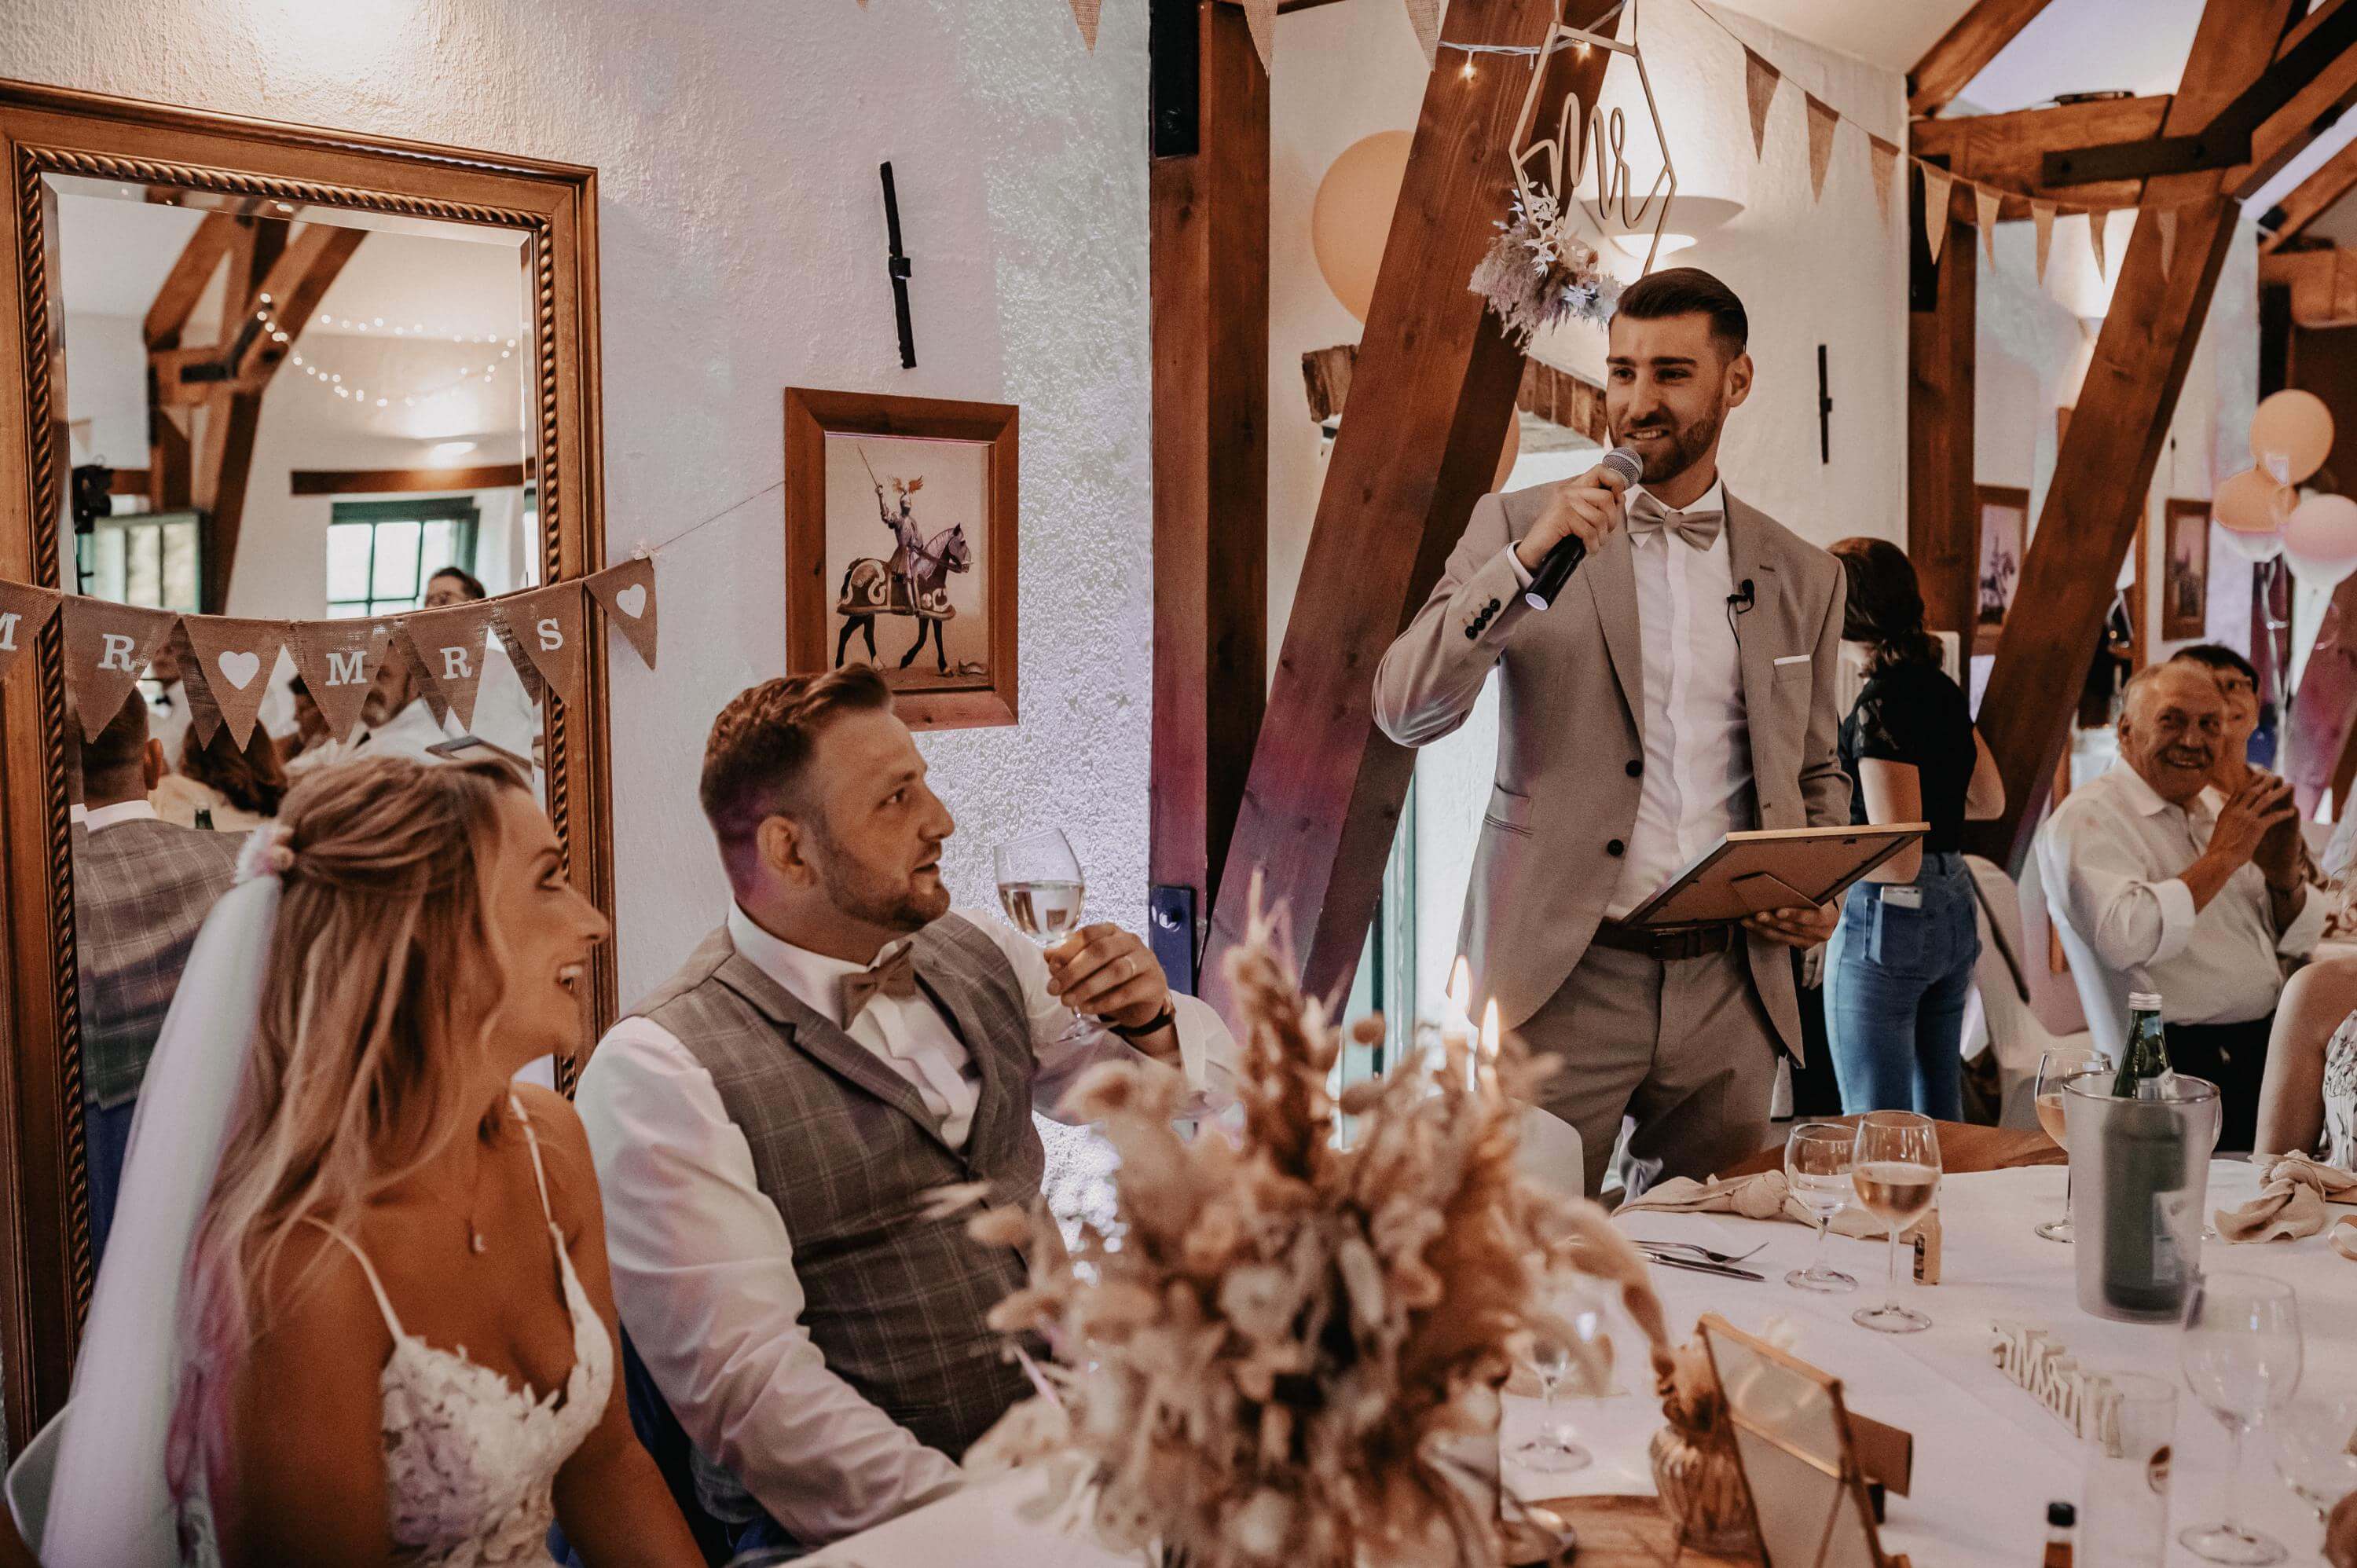 Bei einer Hochzeitsfeier steht ein Trauzeuge am Tisch des neben ihm sitzenden Bräutigams und hält ein Bild im Rahmen in der Hand. Er spricht eine berührende Rede mit dem Mikrofon, die dem Brautpaar die Tränen in die Augen fließen lässt.